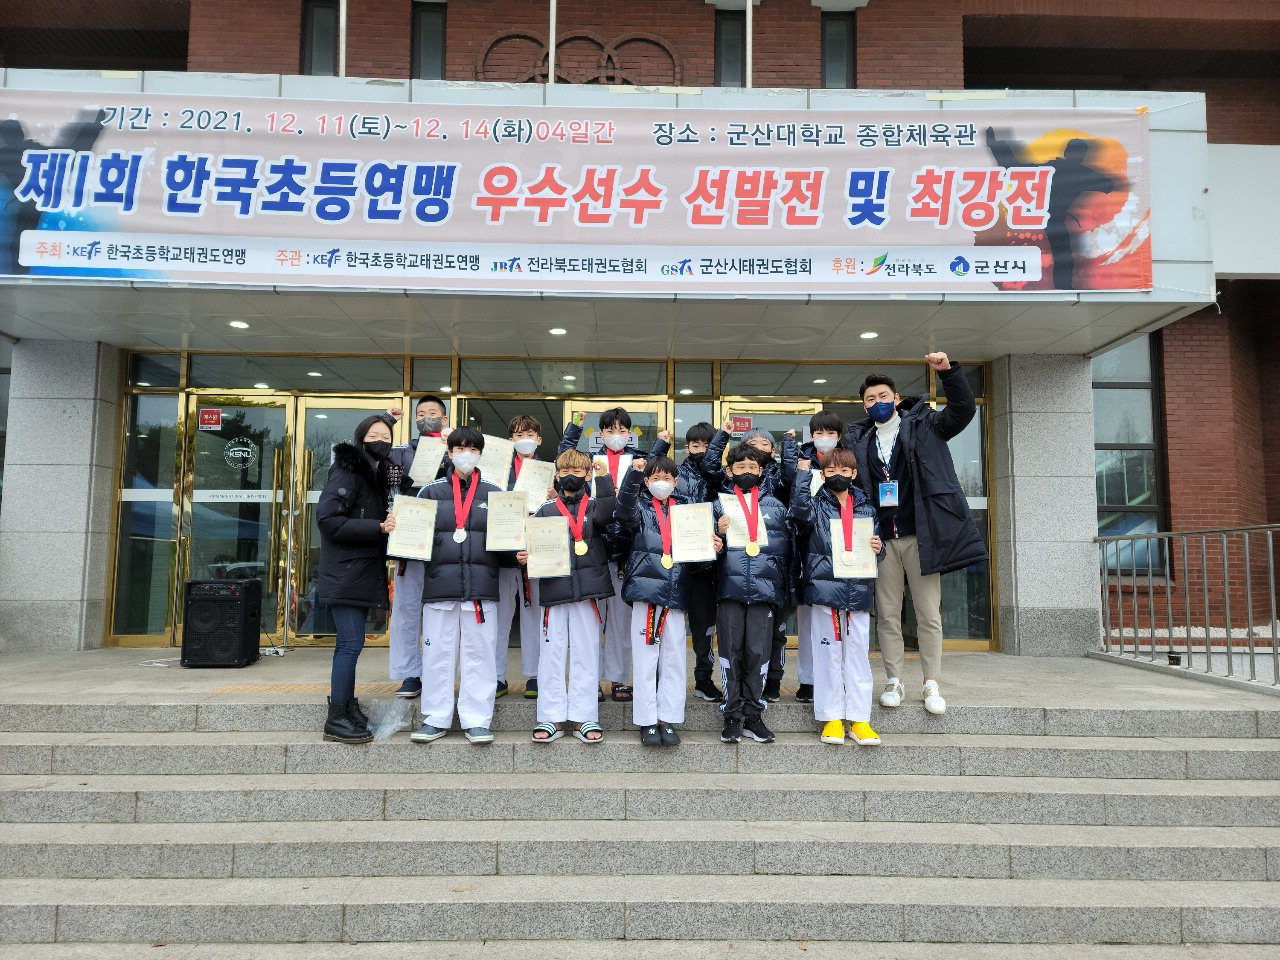 개신초 태권도부 학생들이 제1회 한국초등연맹 우수선수 선발전 및 최강전에 출전해 9개의 메달을 획득하고 단체전 우승의 쾌거를 달성했다.